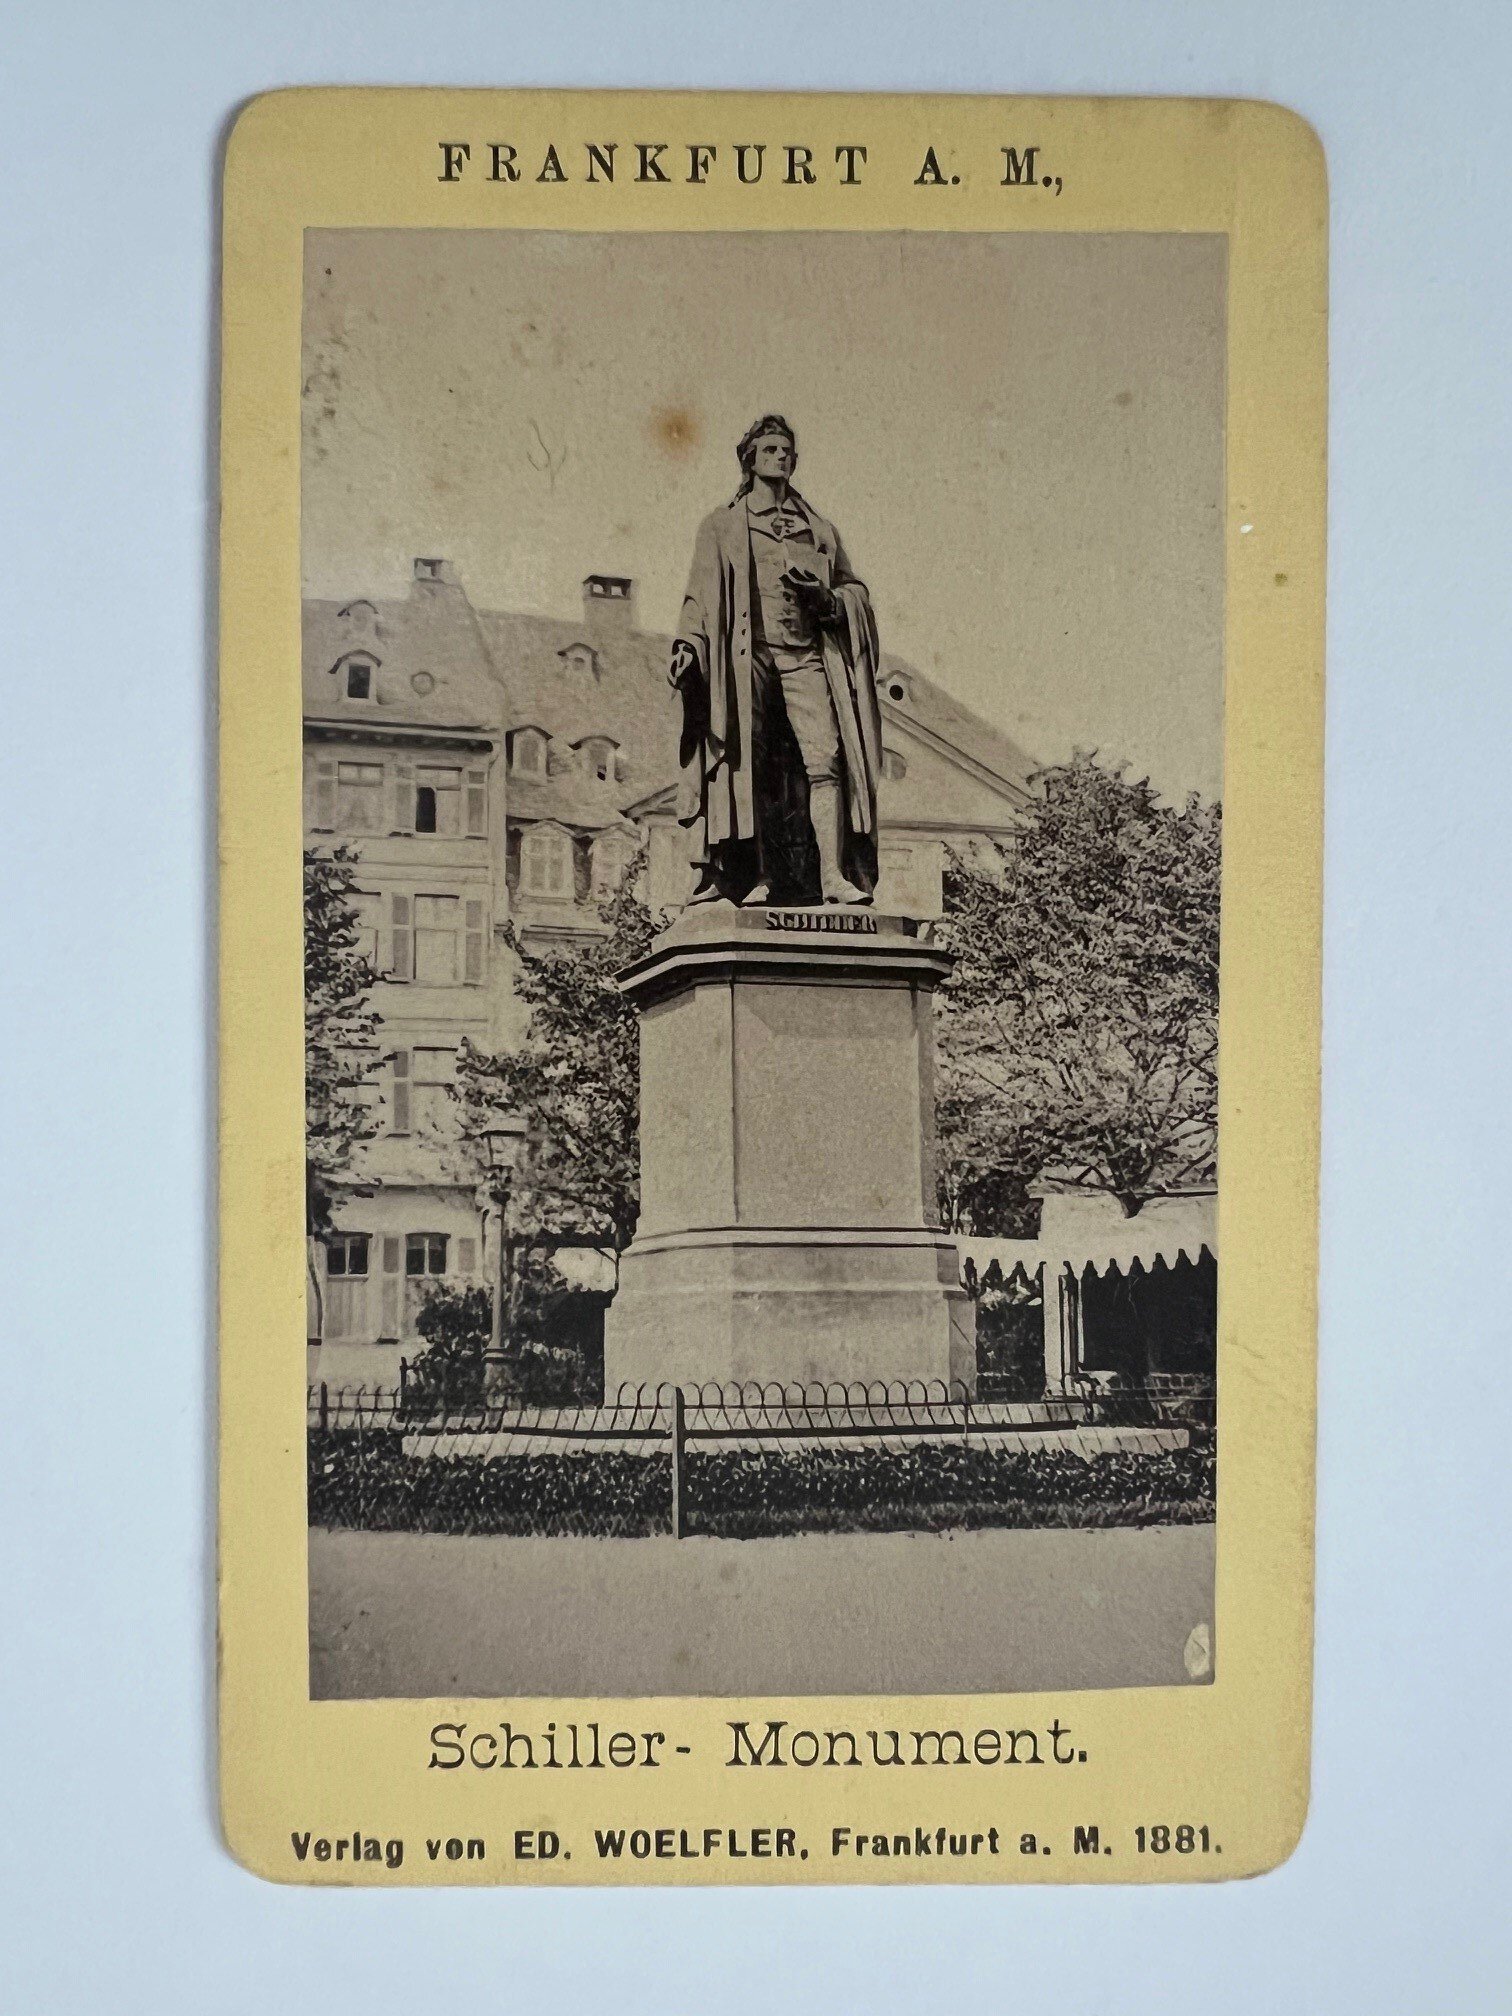 CdV, Frankfurt, Schiller-Monument, ca. 1877. (Taunus-Rhein-Main - Regionalgeschichtliche Sammlung Dr. Stefan Naas CC BY-NC-SA)